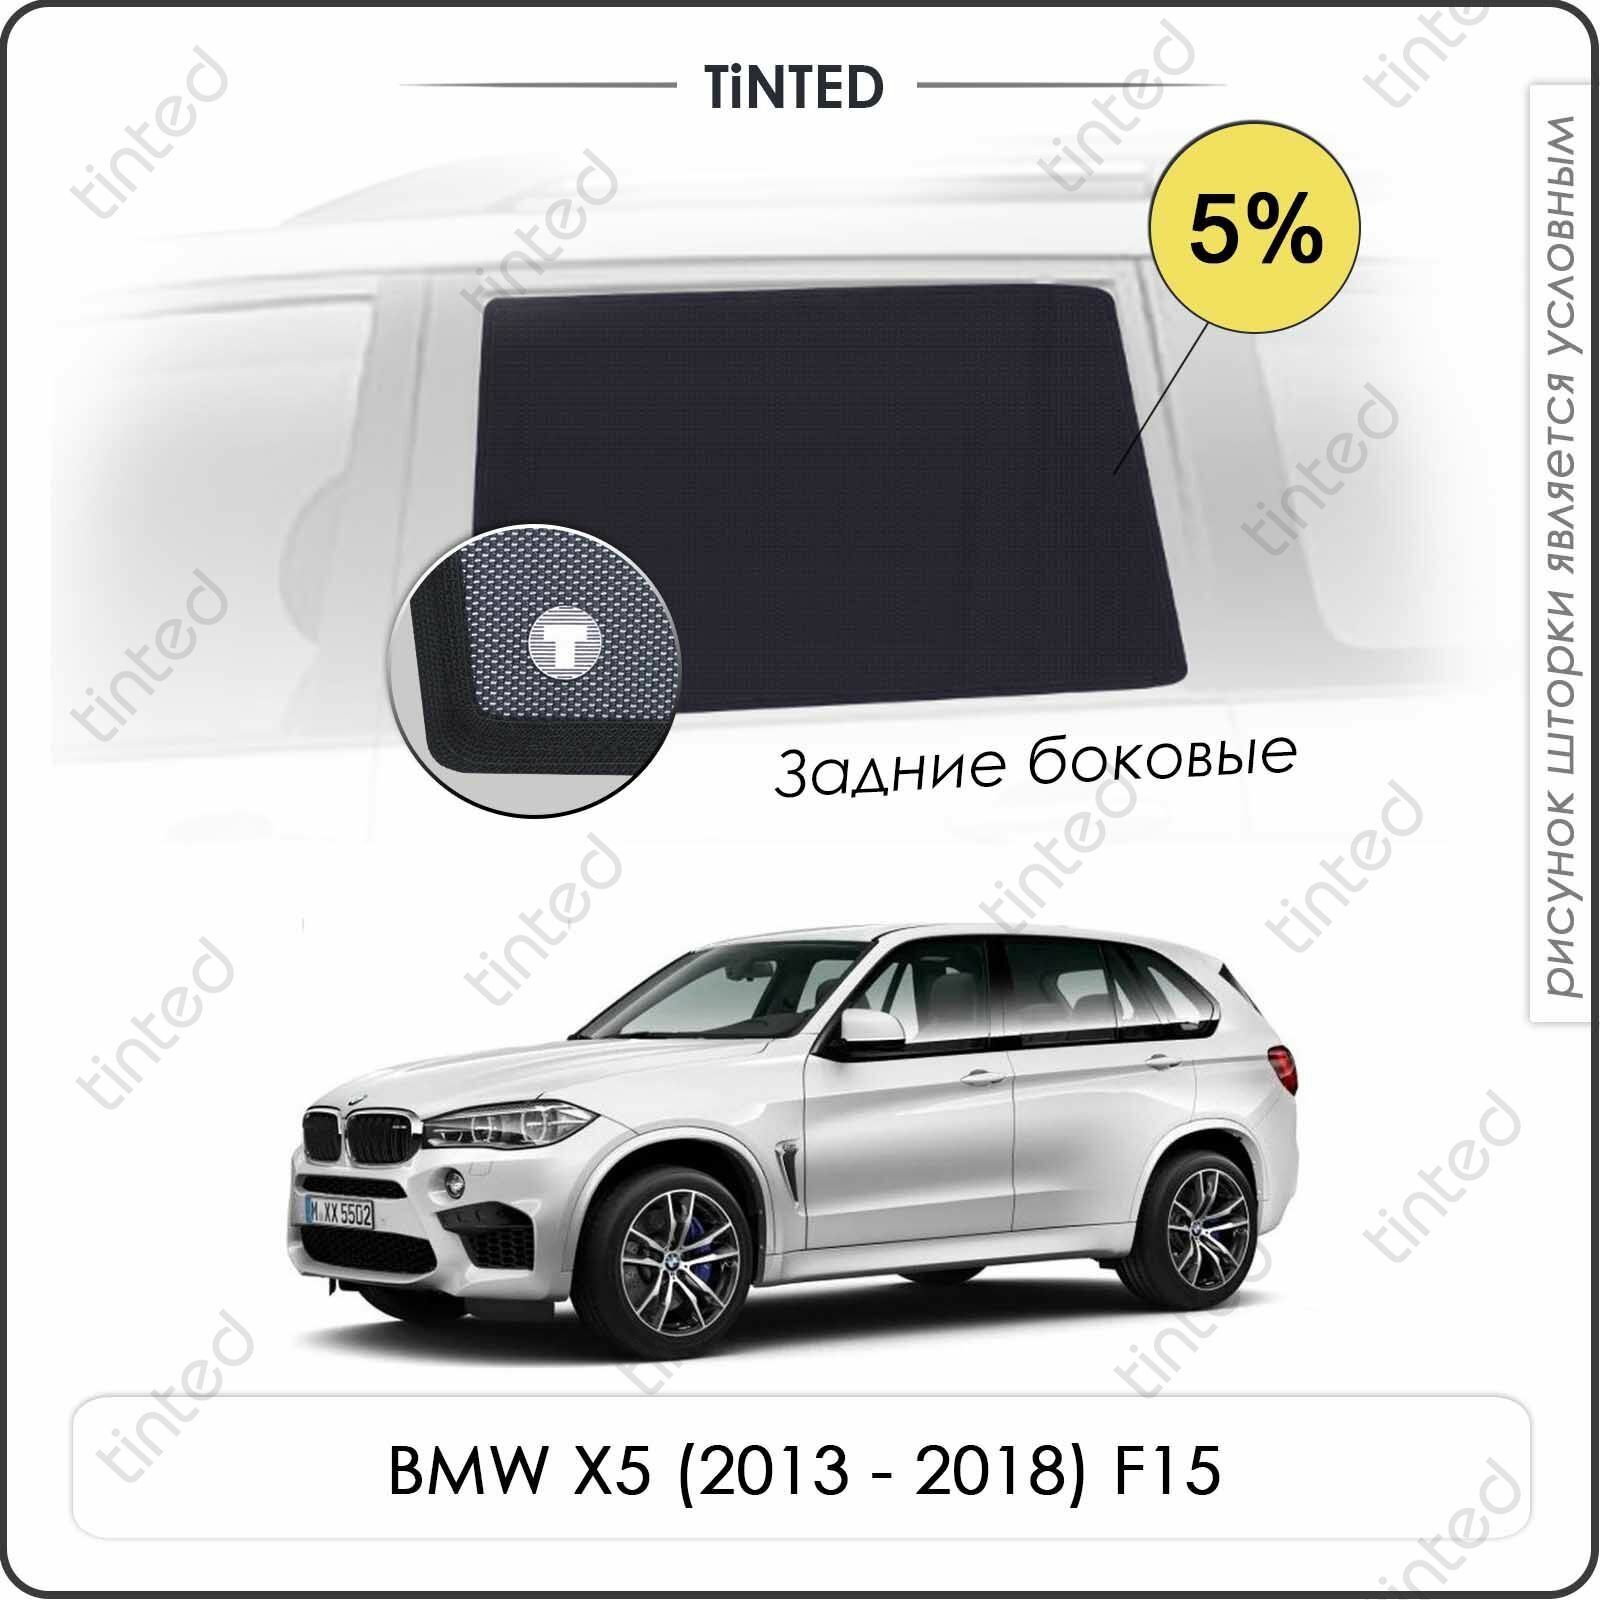 Шторки на автомобиль солнцезащитные BMW X5 3 Внедорожник 5дв. (2013 - 2018) F15 на задние двери 5%, сетки от солнца в машину БМВ Х5 ф15, Каркасные автошторки Premium